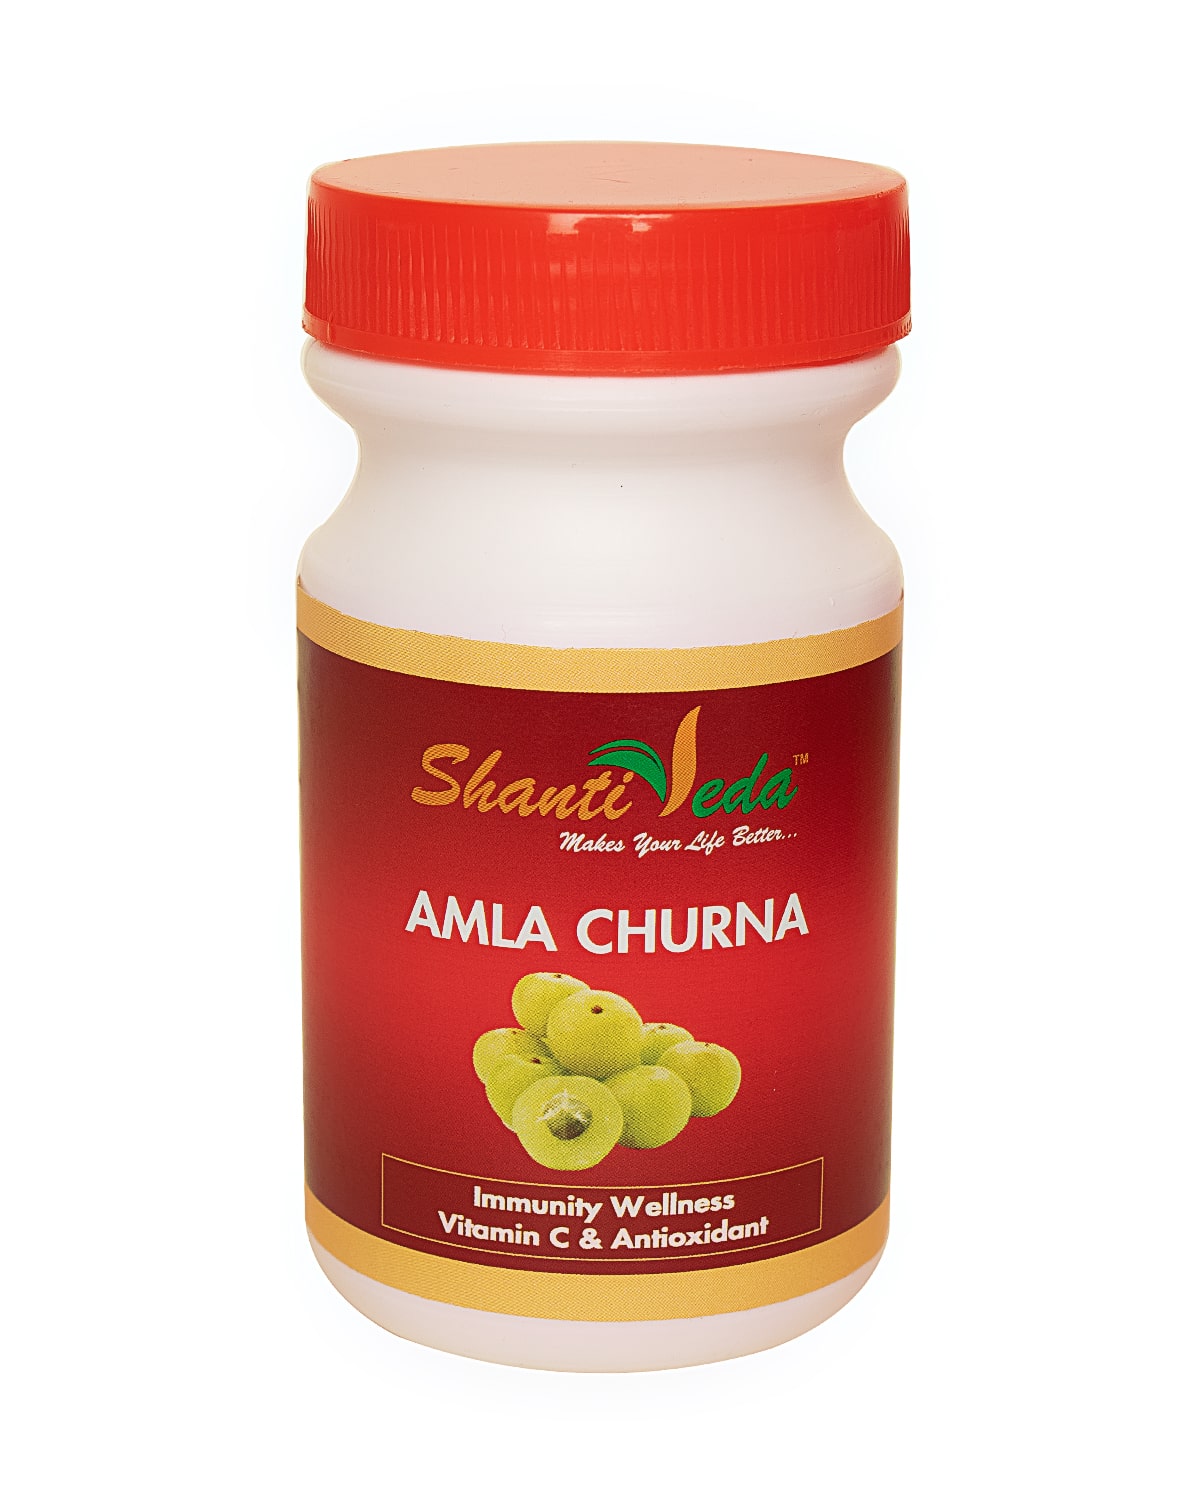 AMLA churna Shanti Veda (Амла порошок (чурна), натуральный источник антиоксидантов и витамина С, Шанти Веда), 100 г. - СРОК ГОДНОСТИ ПО НОЯБРЬ 2023 ГОДА